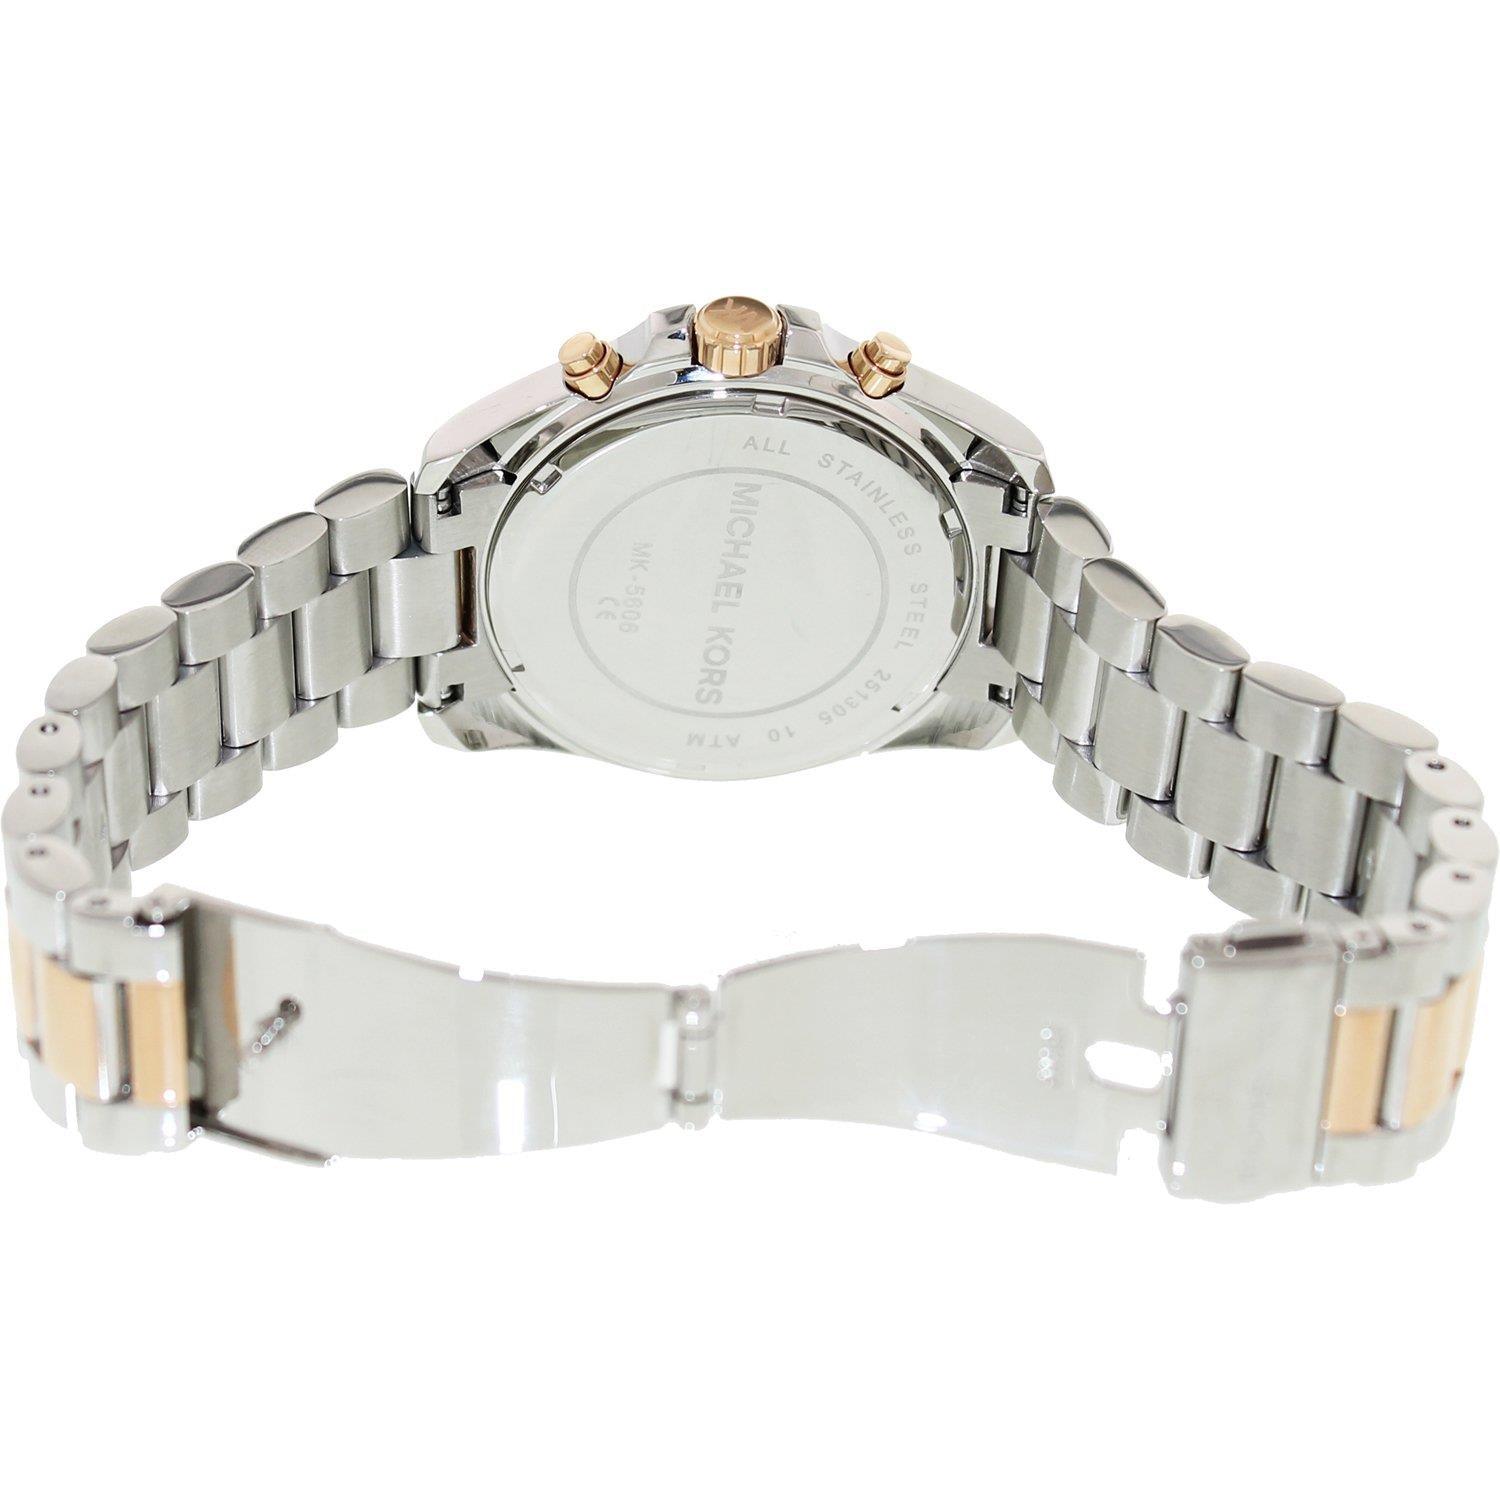 Michael Kors MK5606 Bradshaw Two-Tone Chronograph Women's Watch - Watch Home™